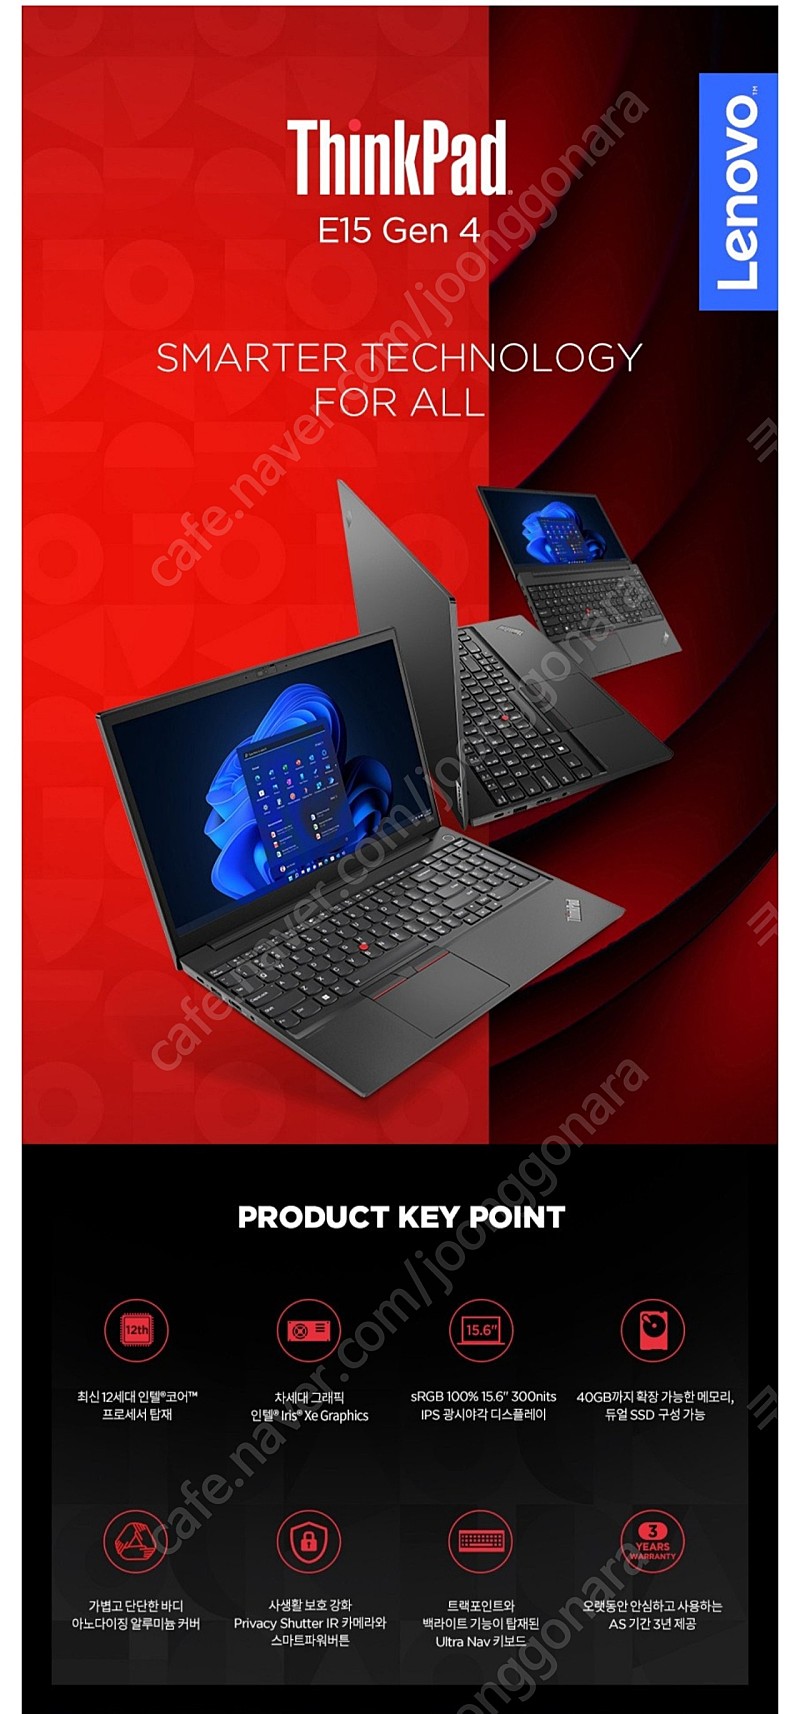 (미개봉) 레노버 씽크패드(ThinkPad) E5 Gen4 21E6S00200 노트북 팝니다. (블랙)